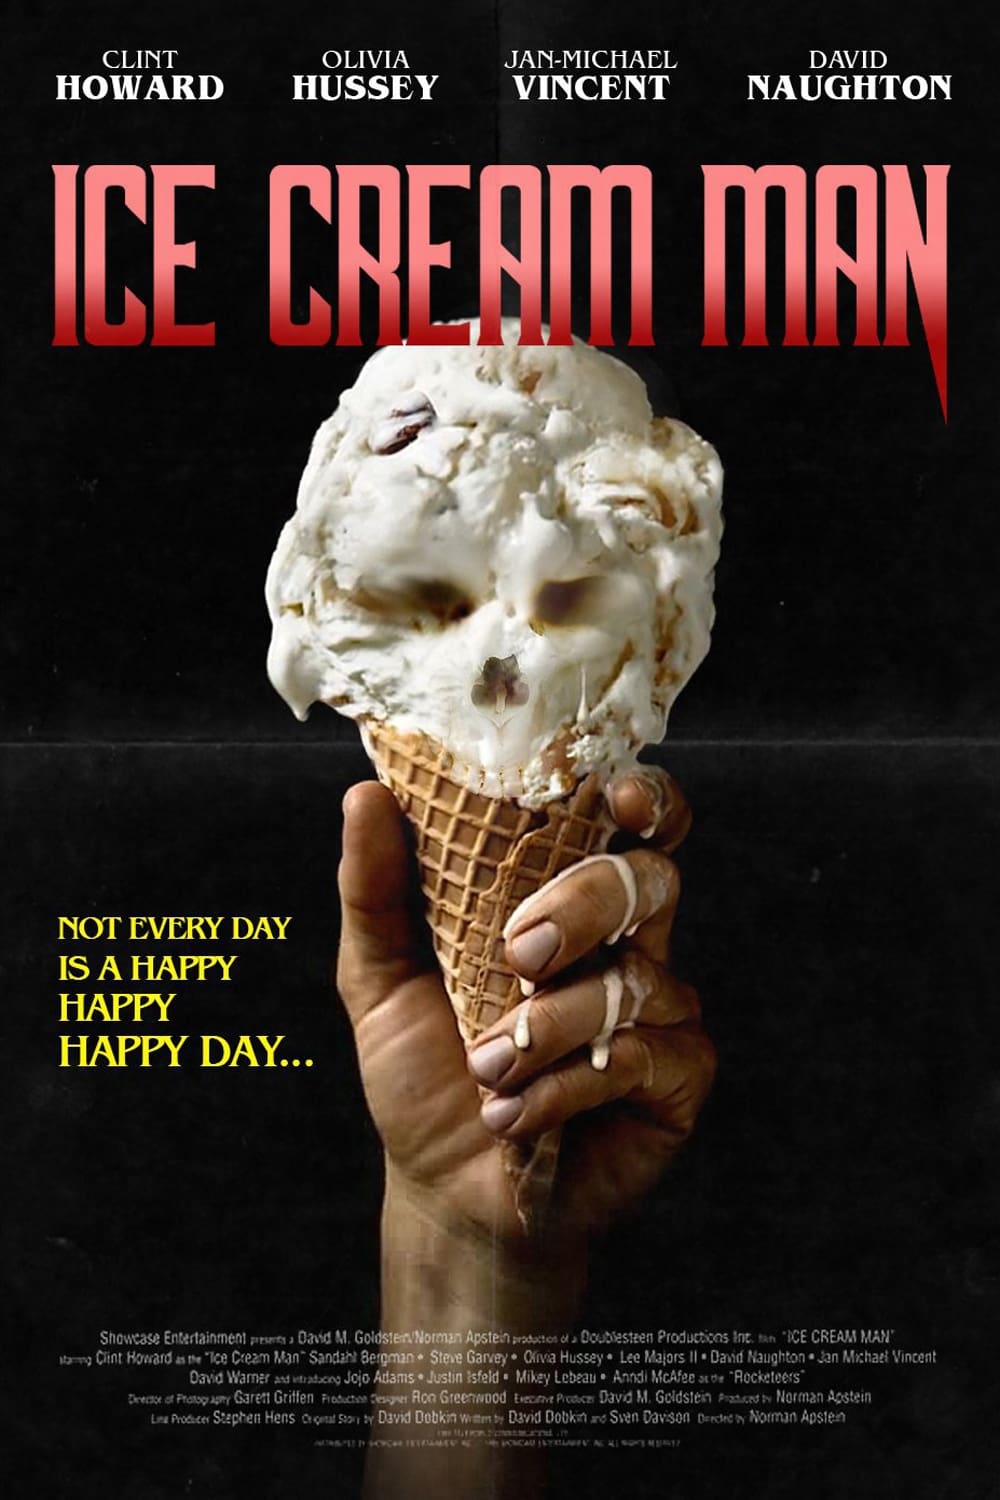 Plakat promujący film. Dłoń trzymająca lody w wafelku. Masa w kolorze białym układa się w kształt czaszki ludzkiej.